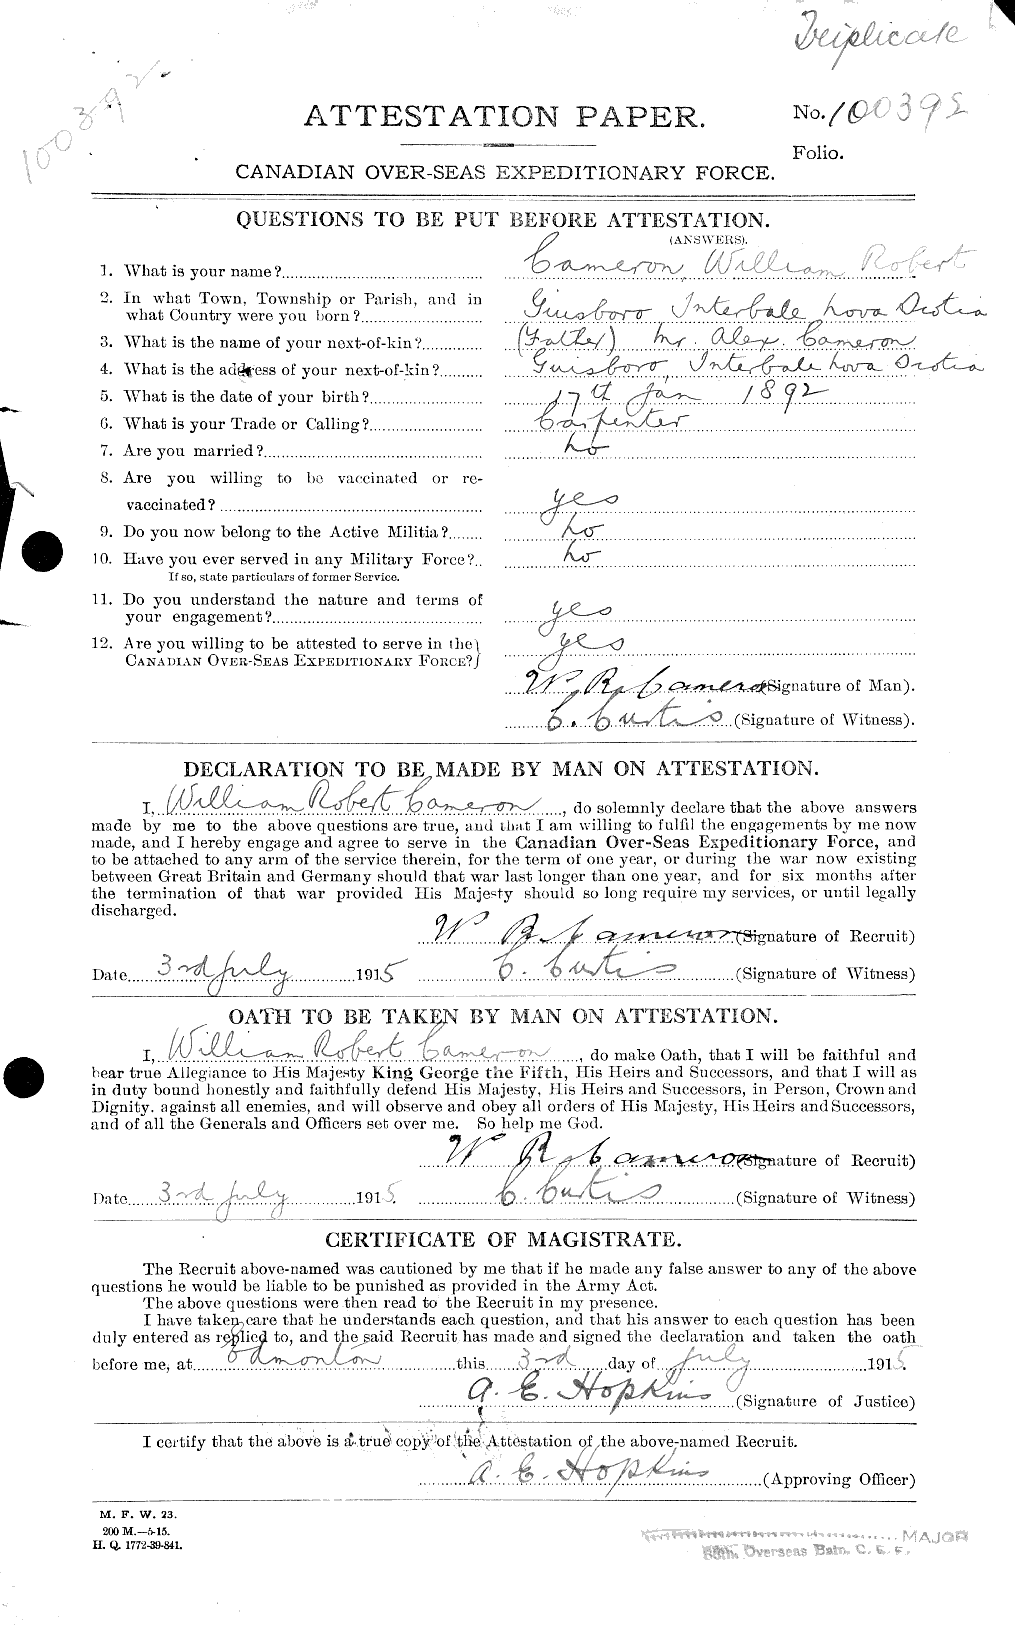 Dossiers du Personnel de la Première Guerre mondiale - CEC 003345a